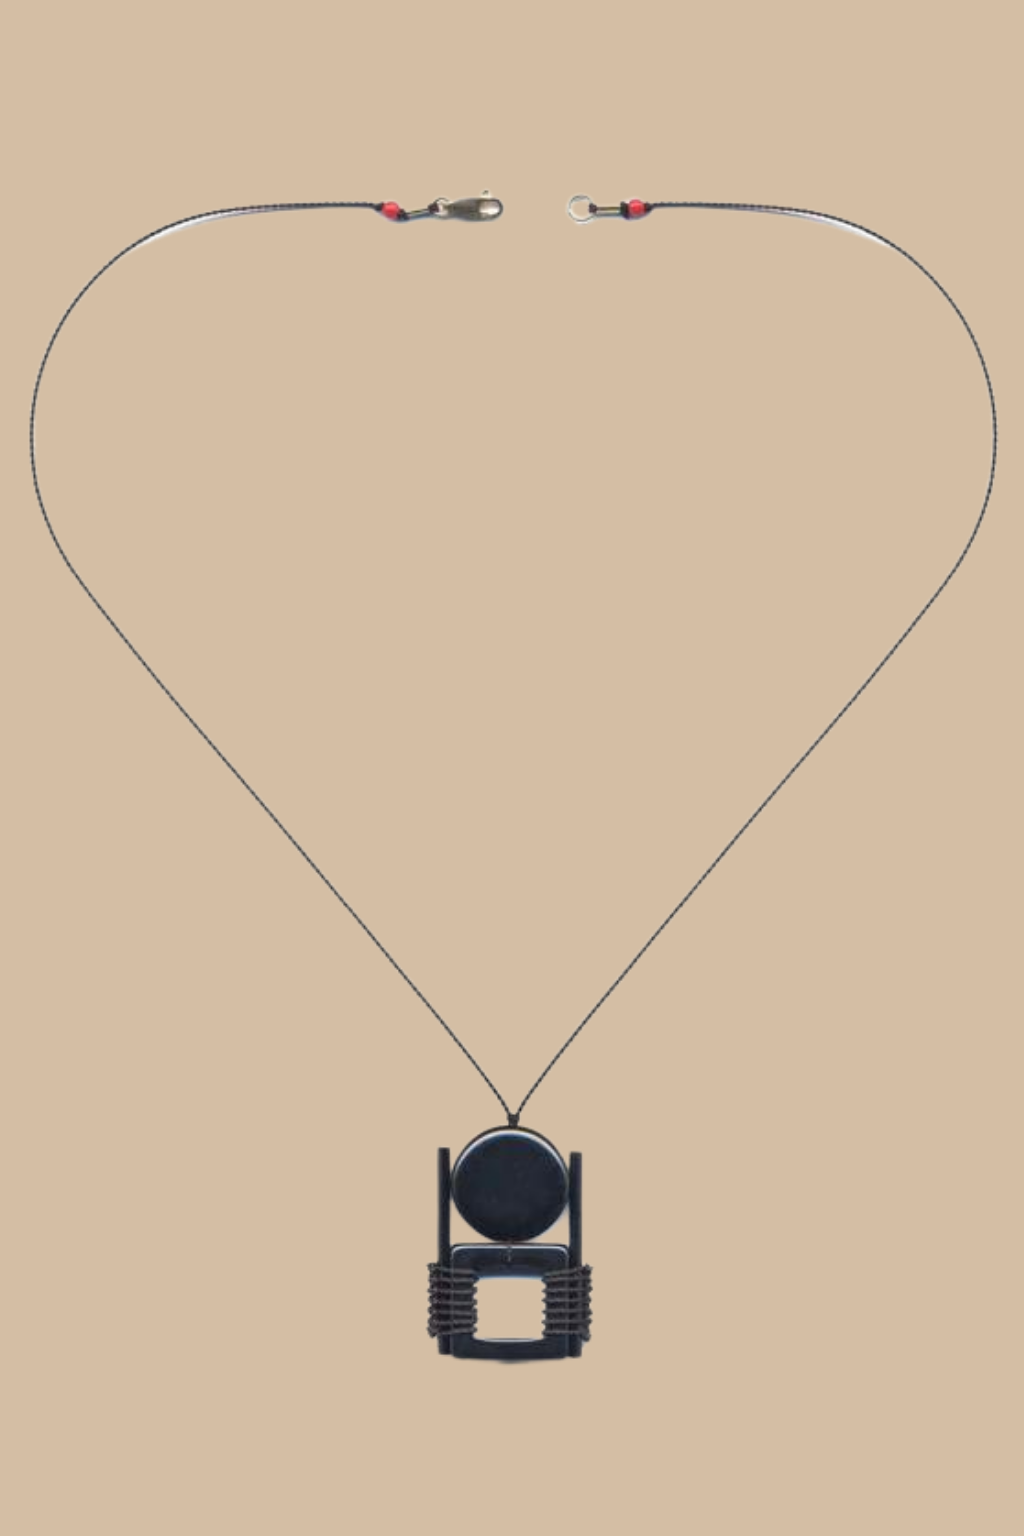 Anni Albers- Black Pendant Necklace